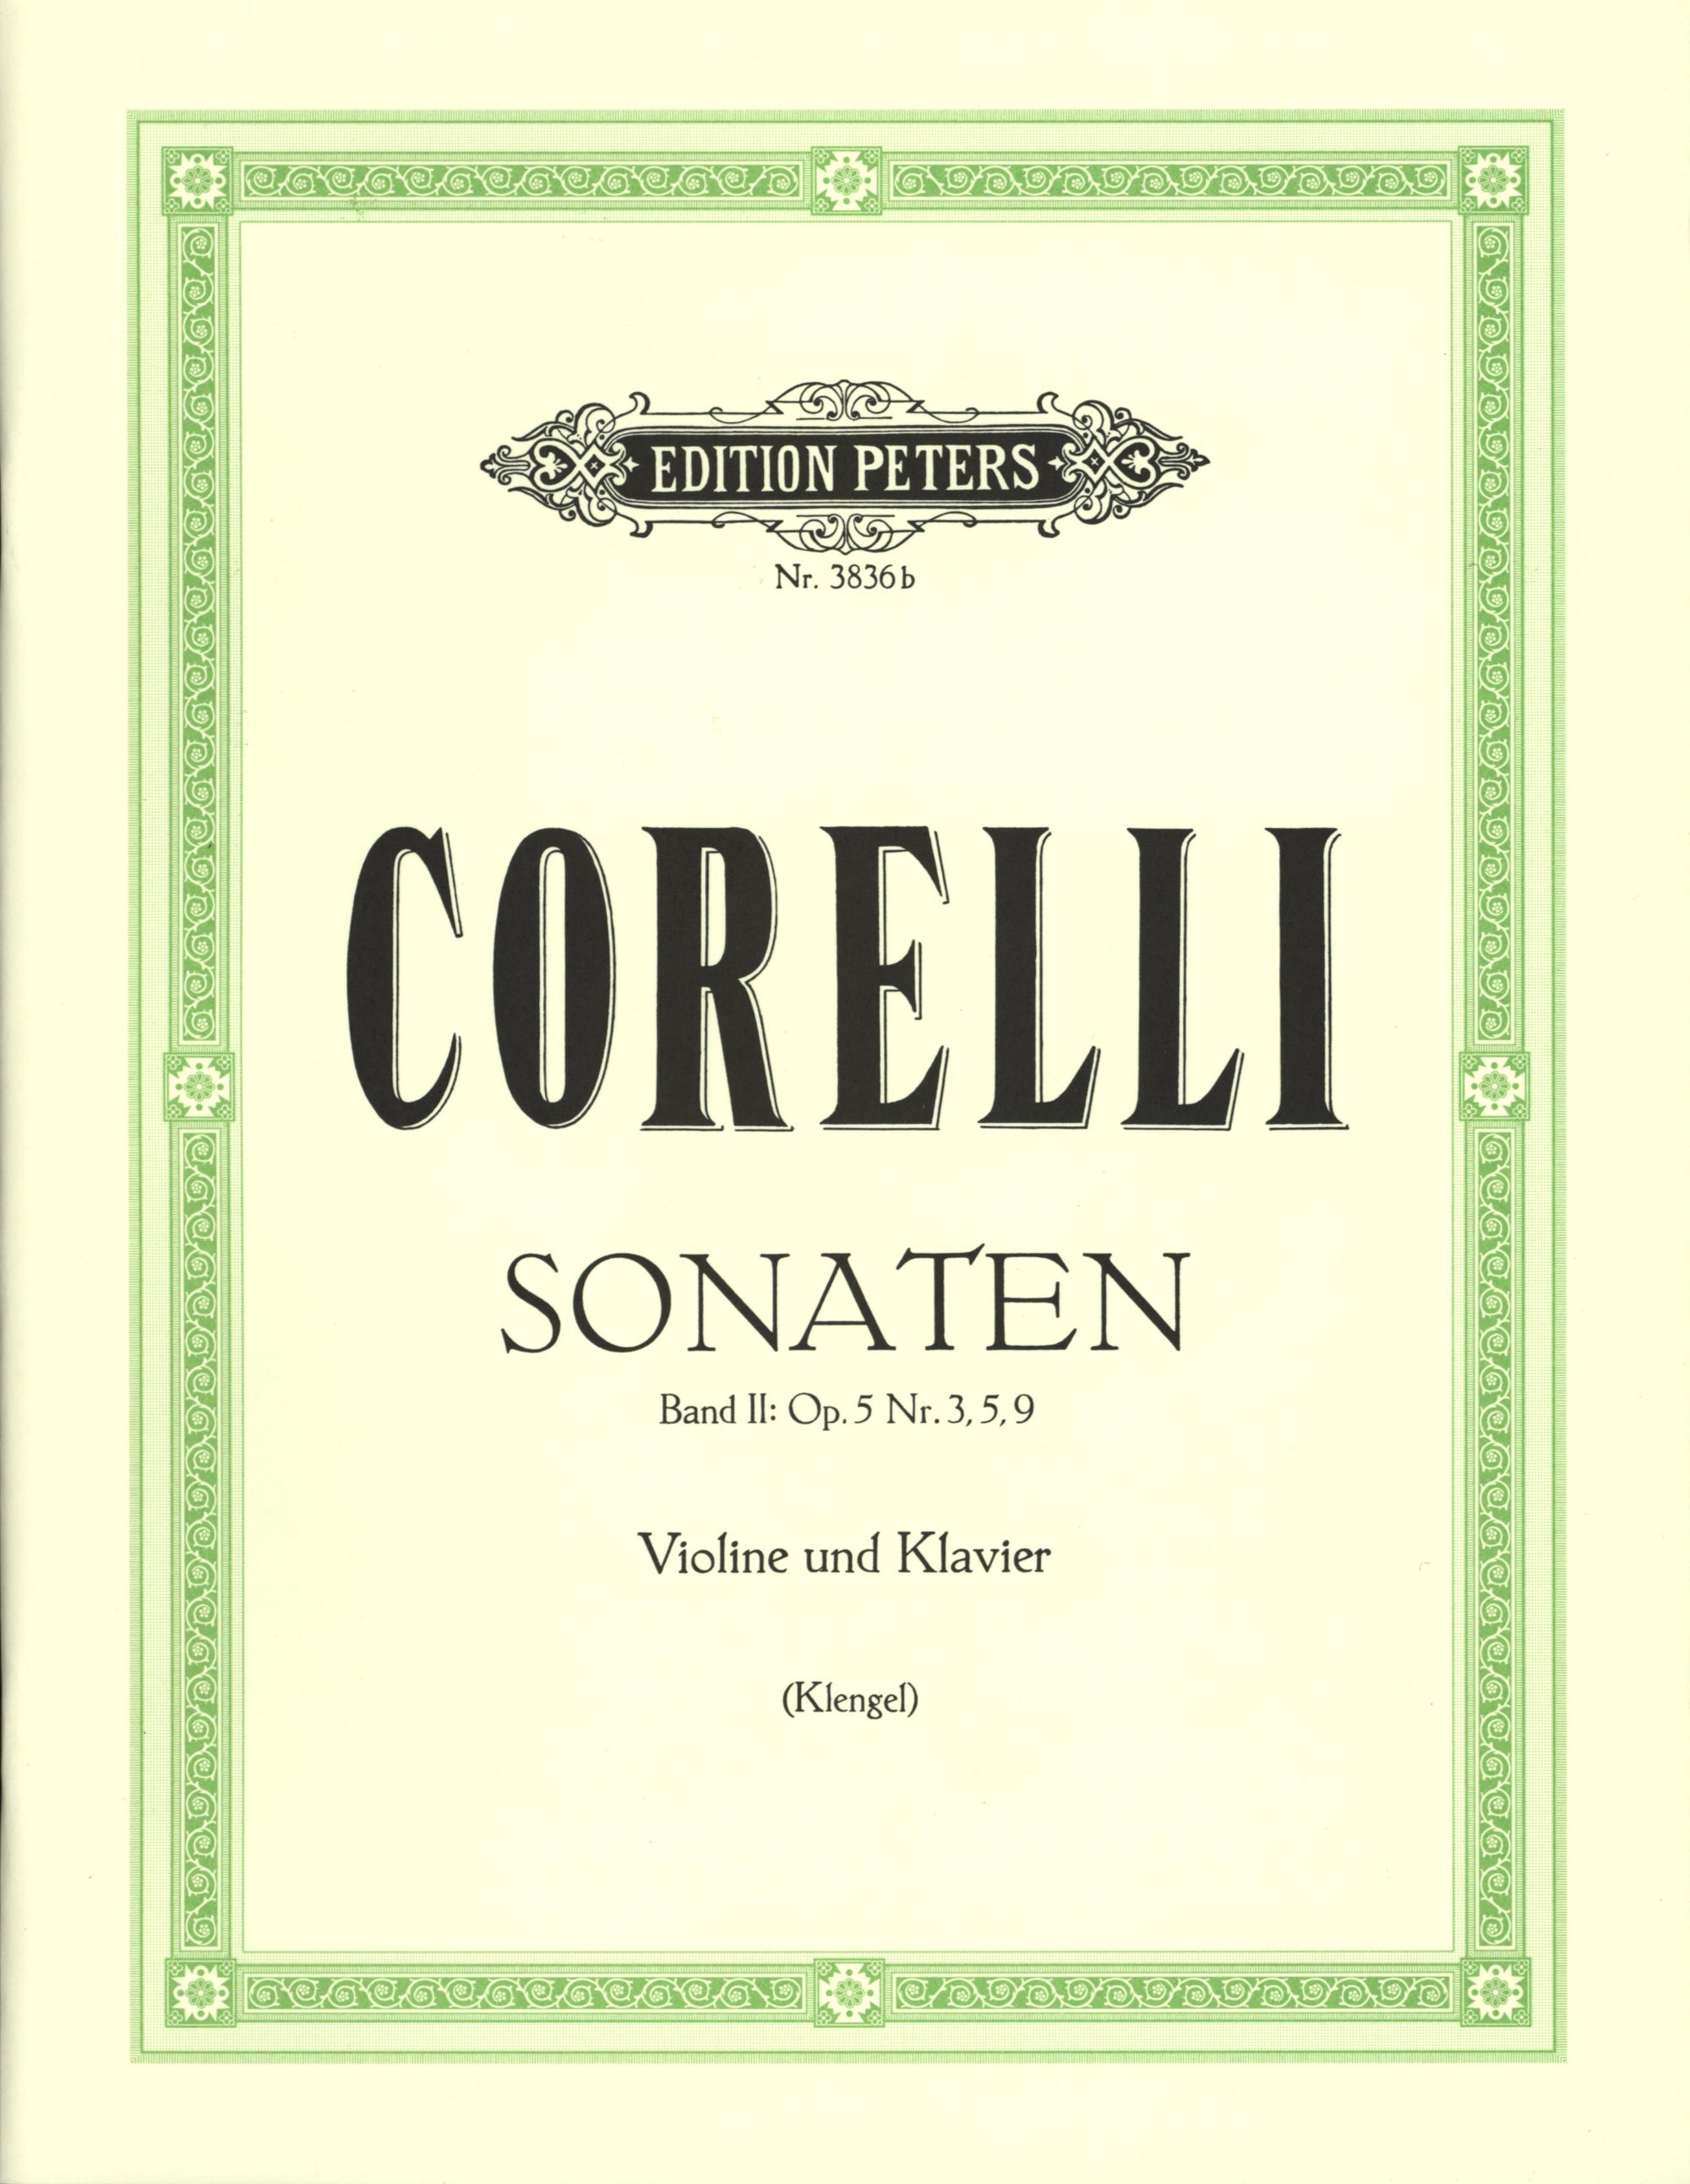 Corelli: Violin Sonatas, Op. 5 - Volume 2 (Nos. 3, 5, 9)